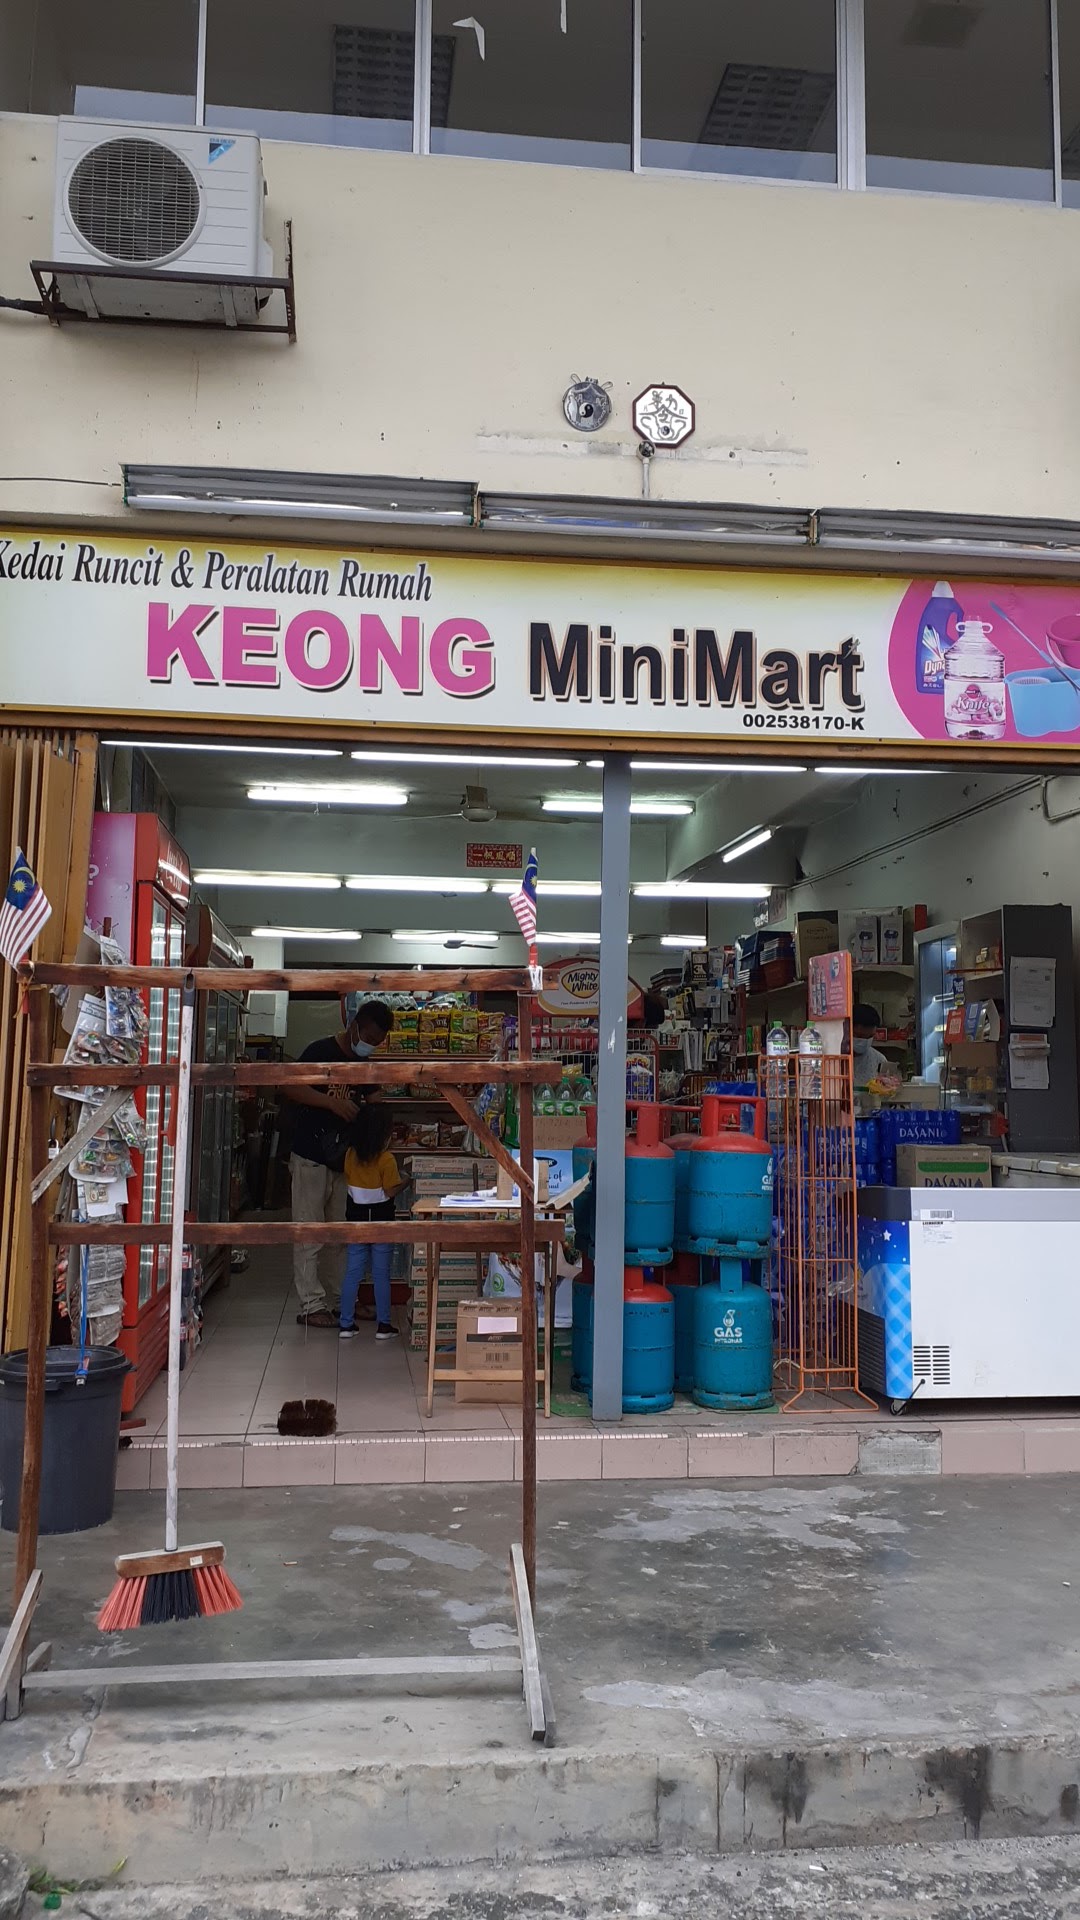 Keong MiniMart